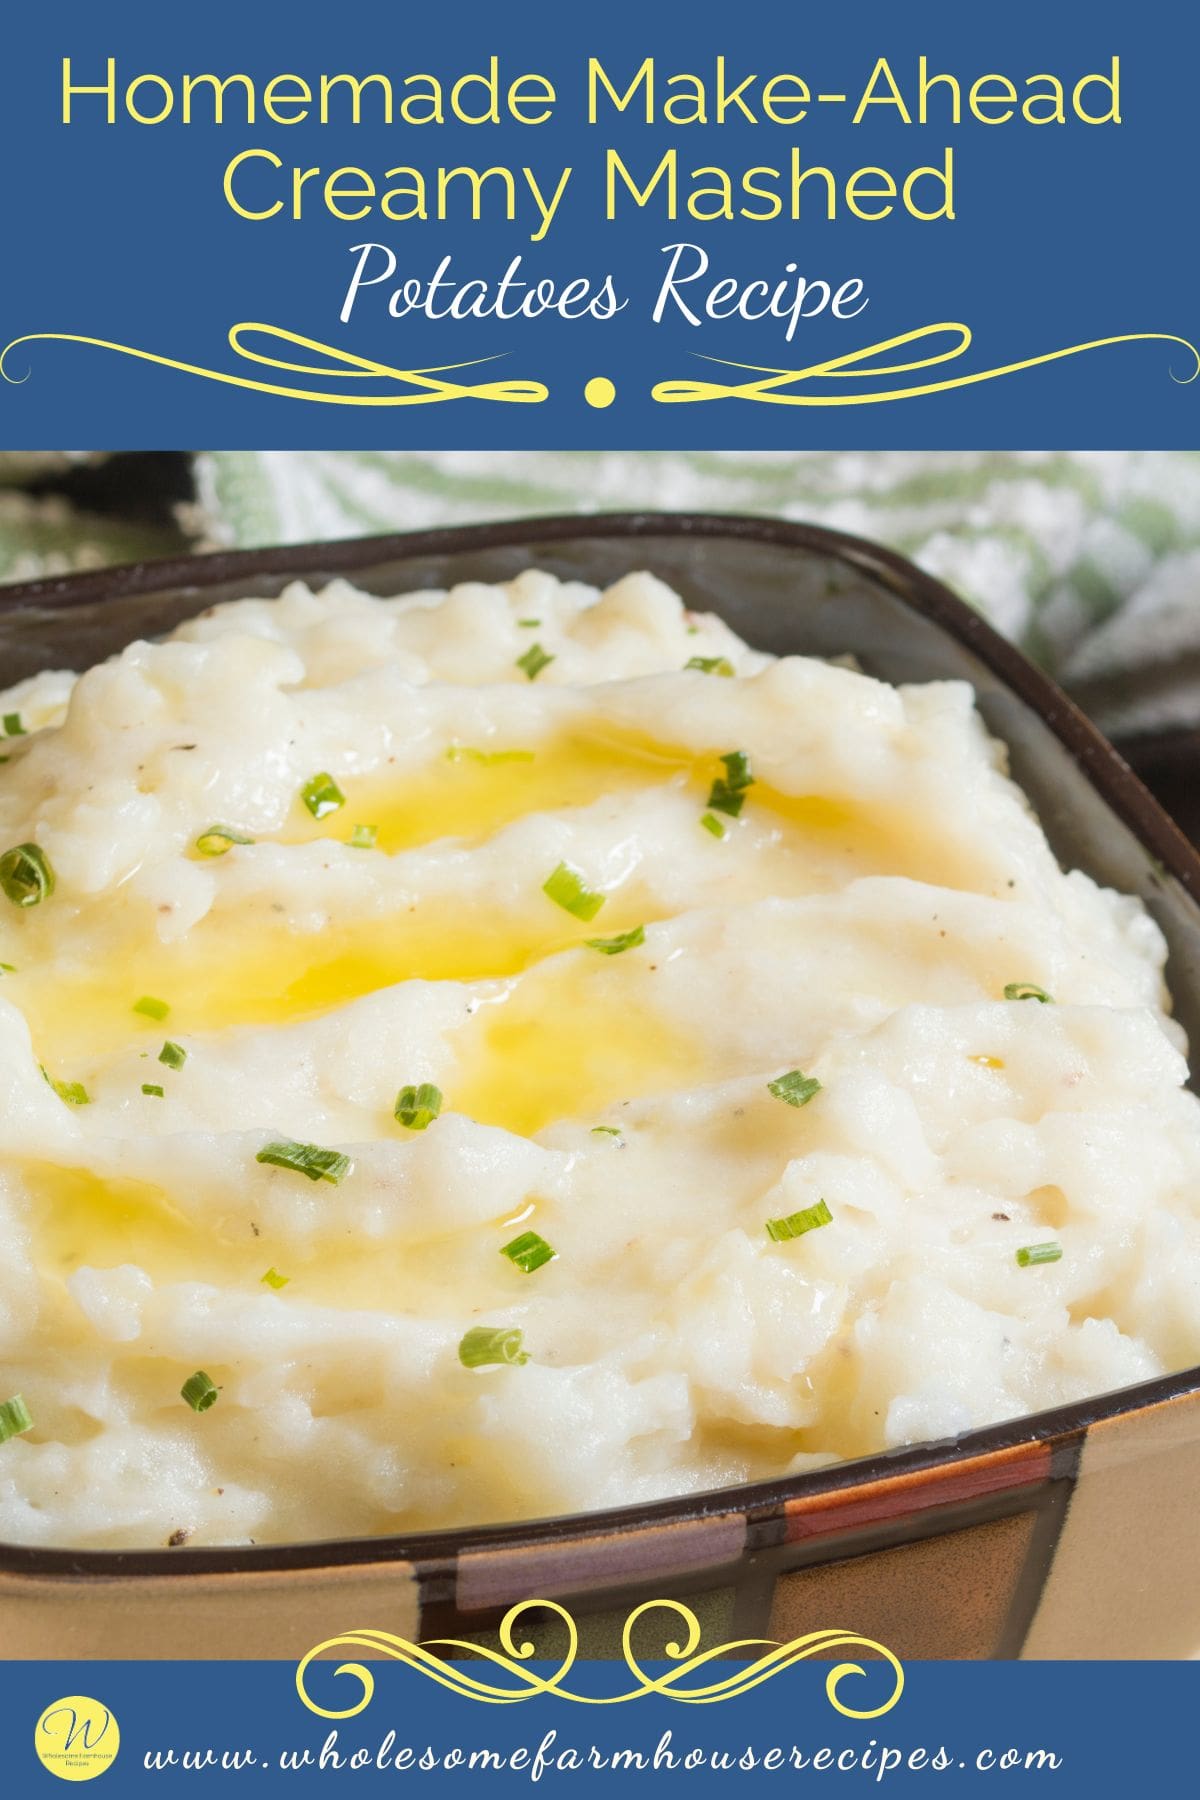 Homemade Make-Ahead Creamy Mashed Potatoes Recipe